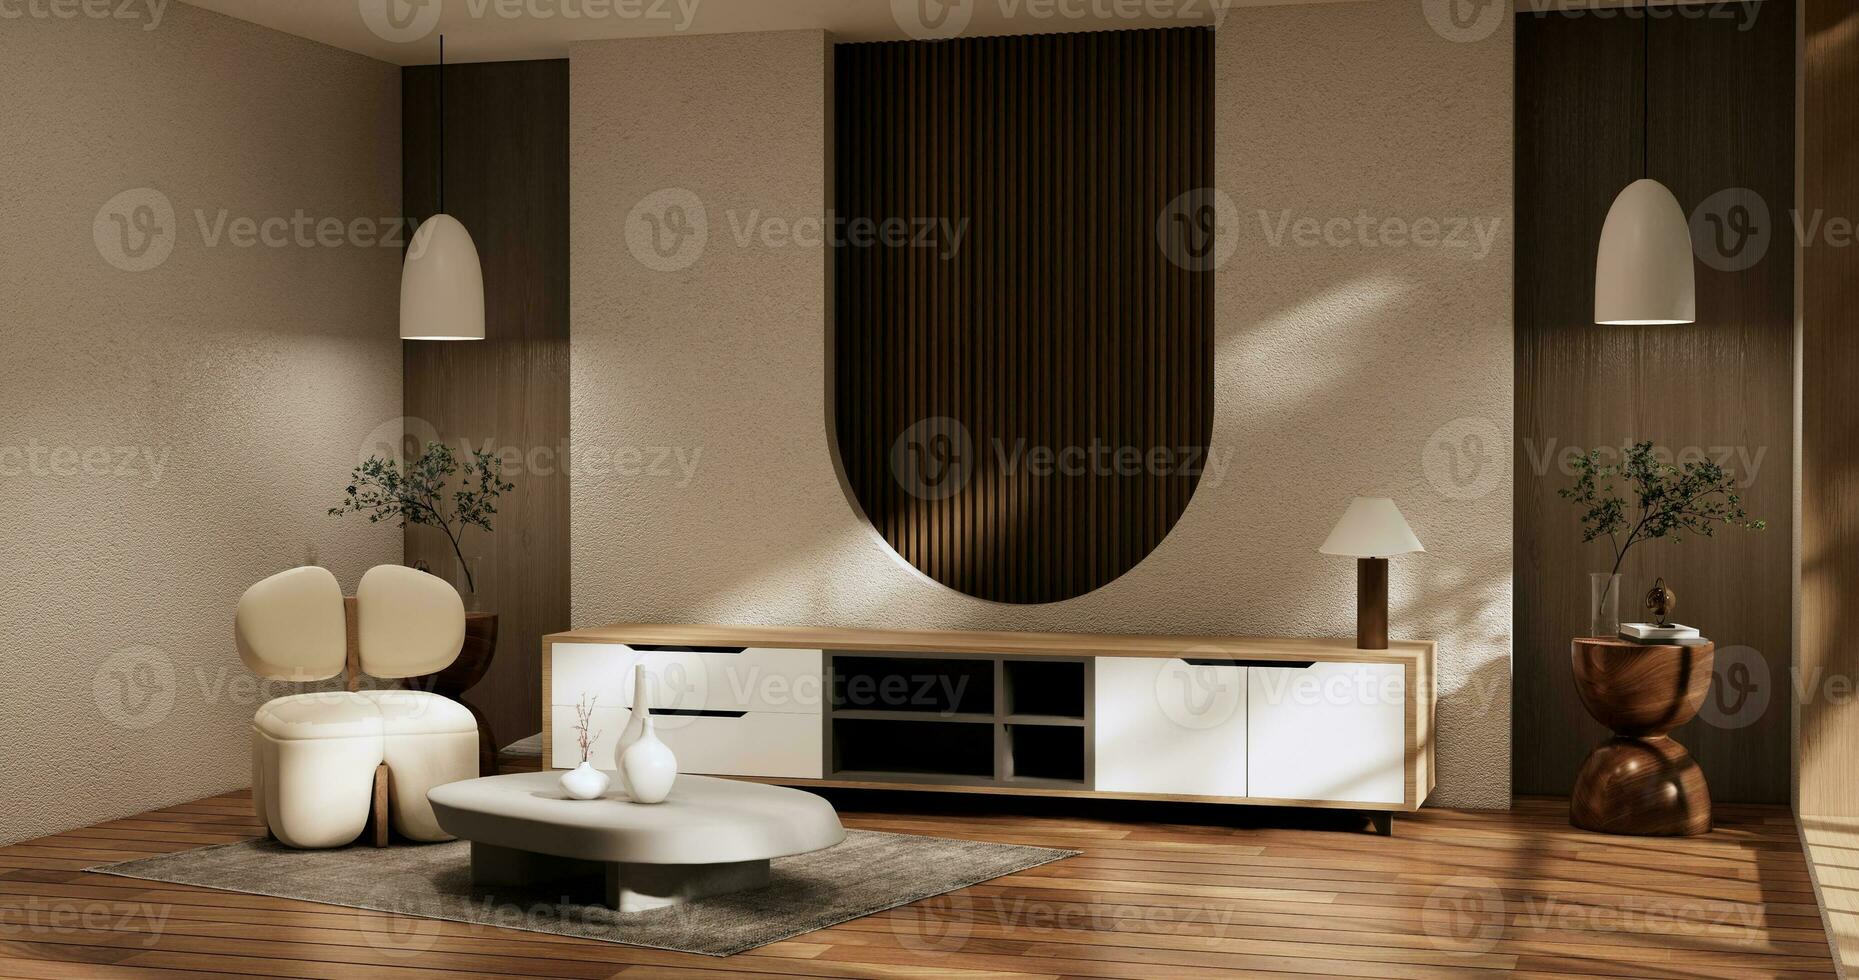 cabinet pièce en bois intérieur wabisabi style.3d le rendu photo